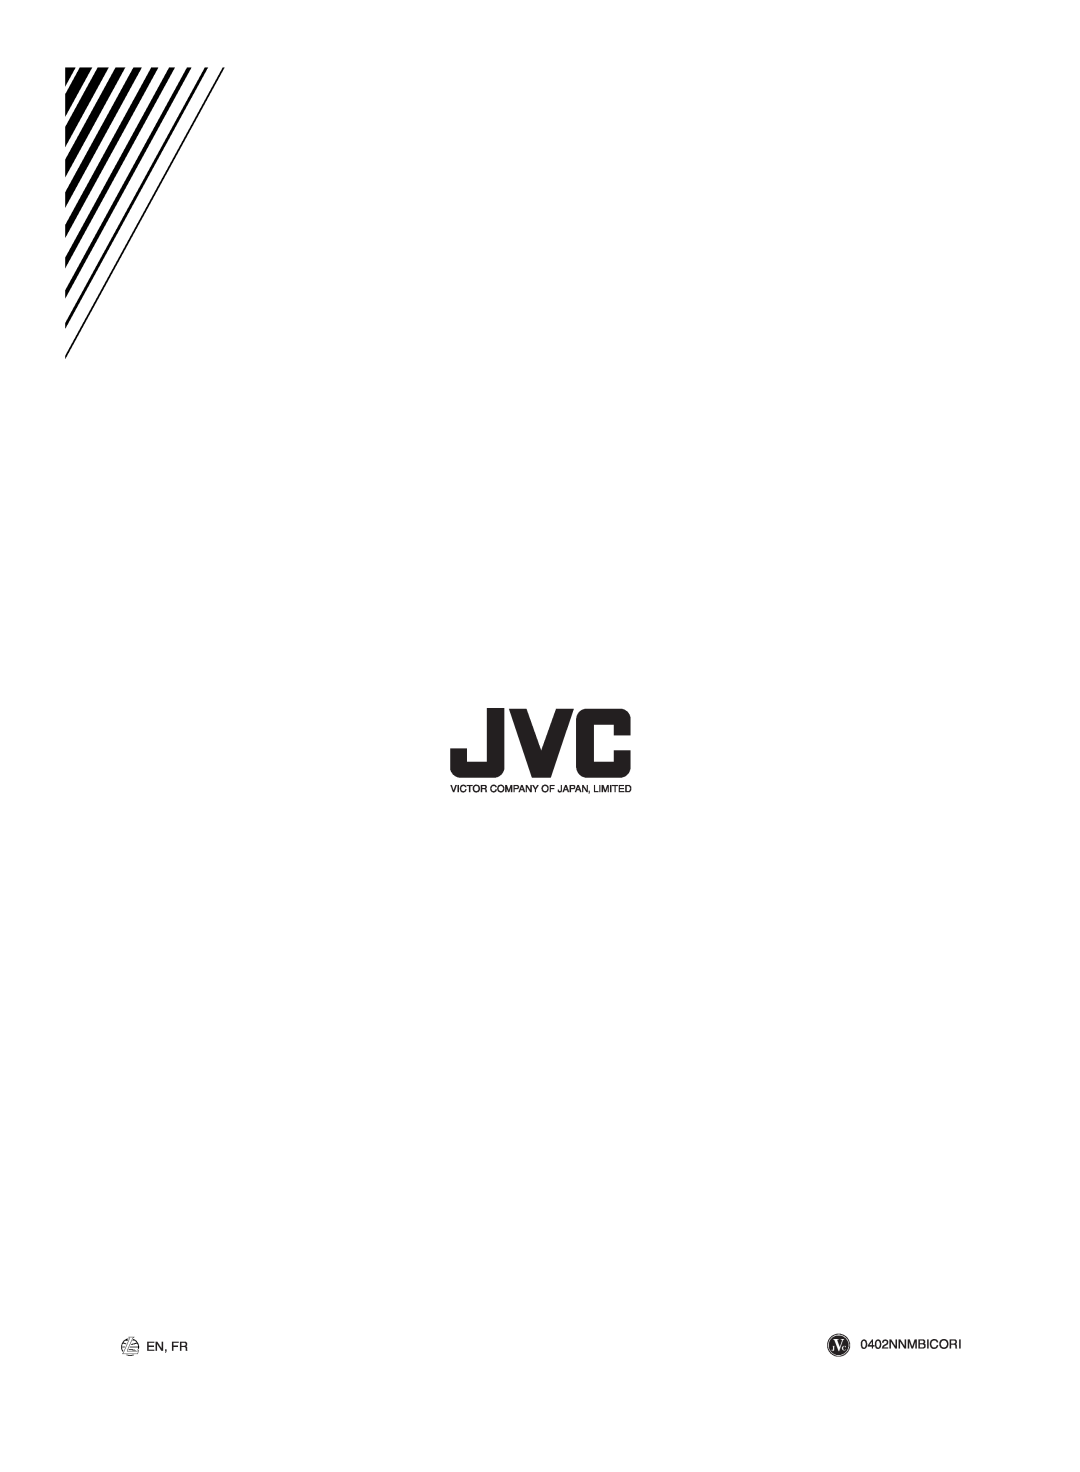 JVC FS-M5 manual En, Fr, 0402NNMBICORI 